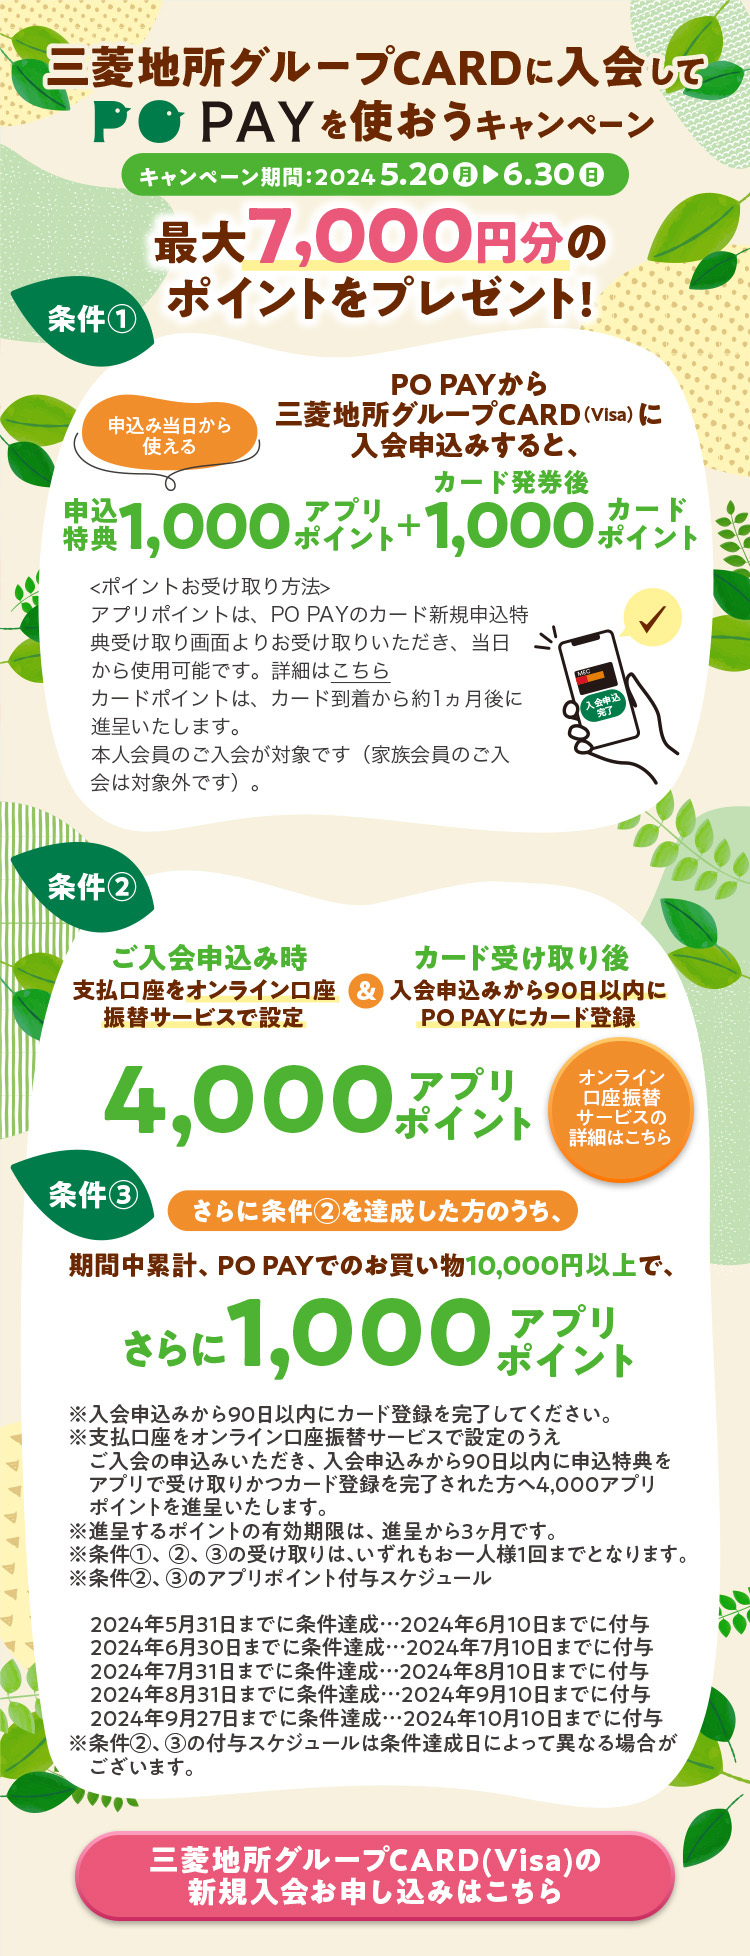 三菱地所グループCARDに入会してPO PAYを使おうキャンペーン